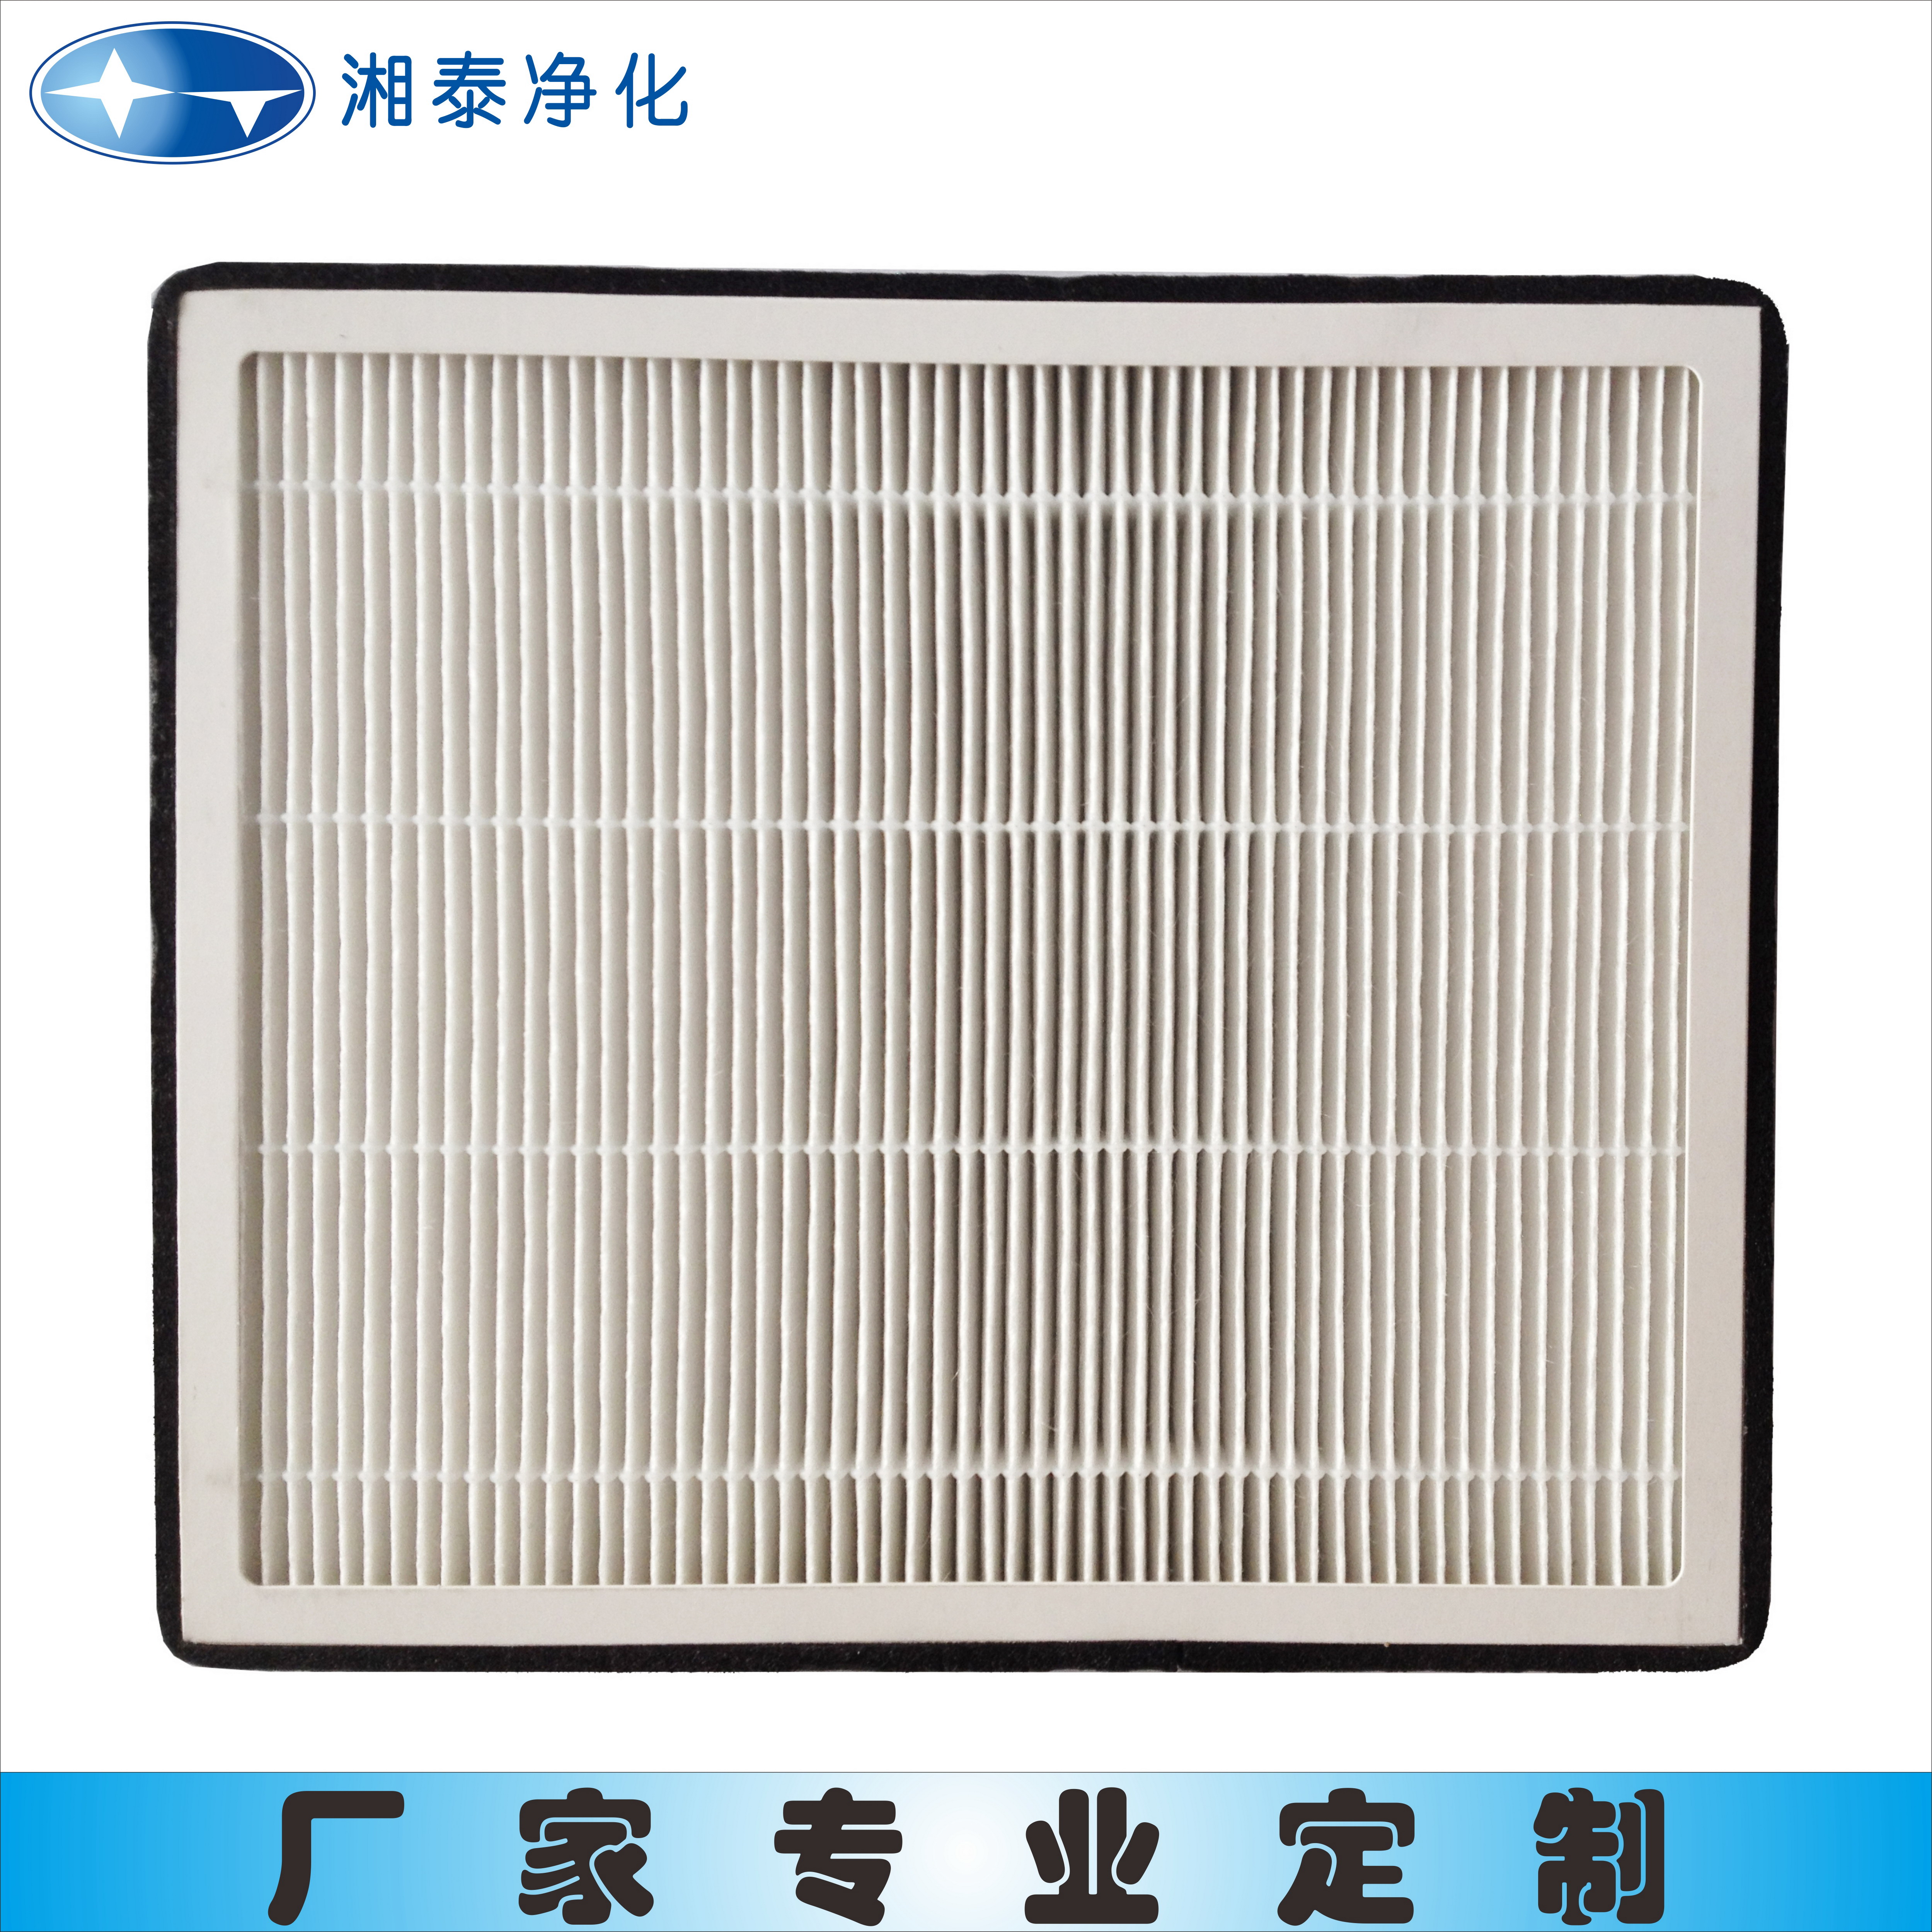 广州汽车空调滤清器生产厂家图片